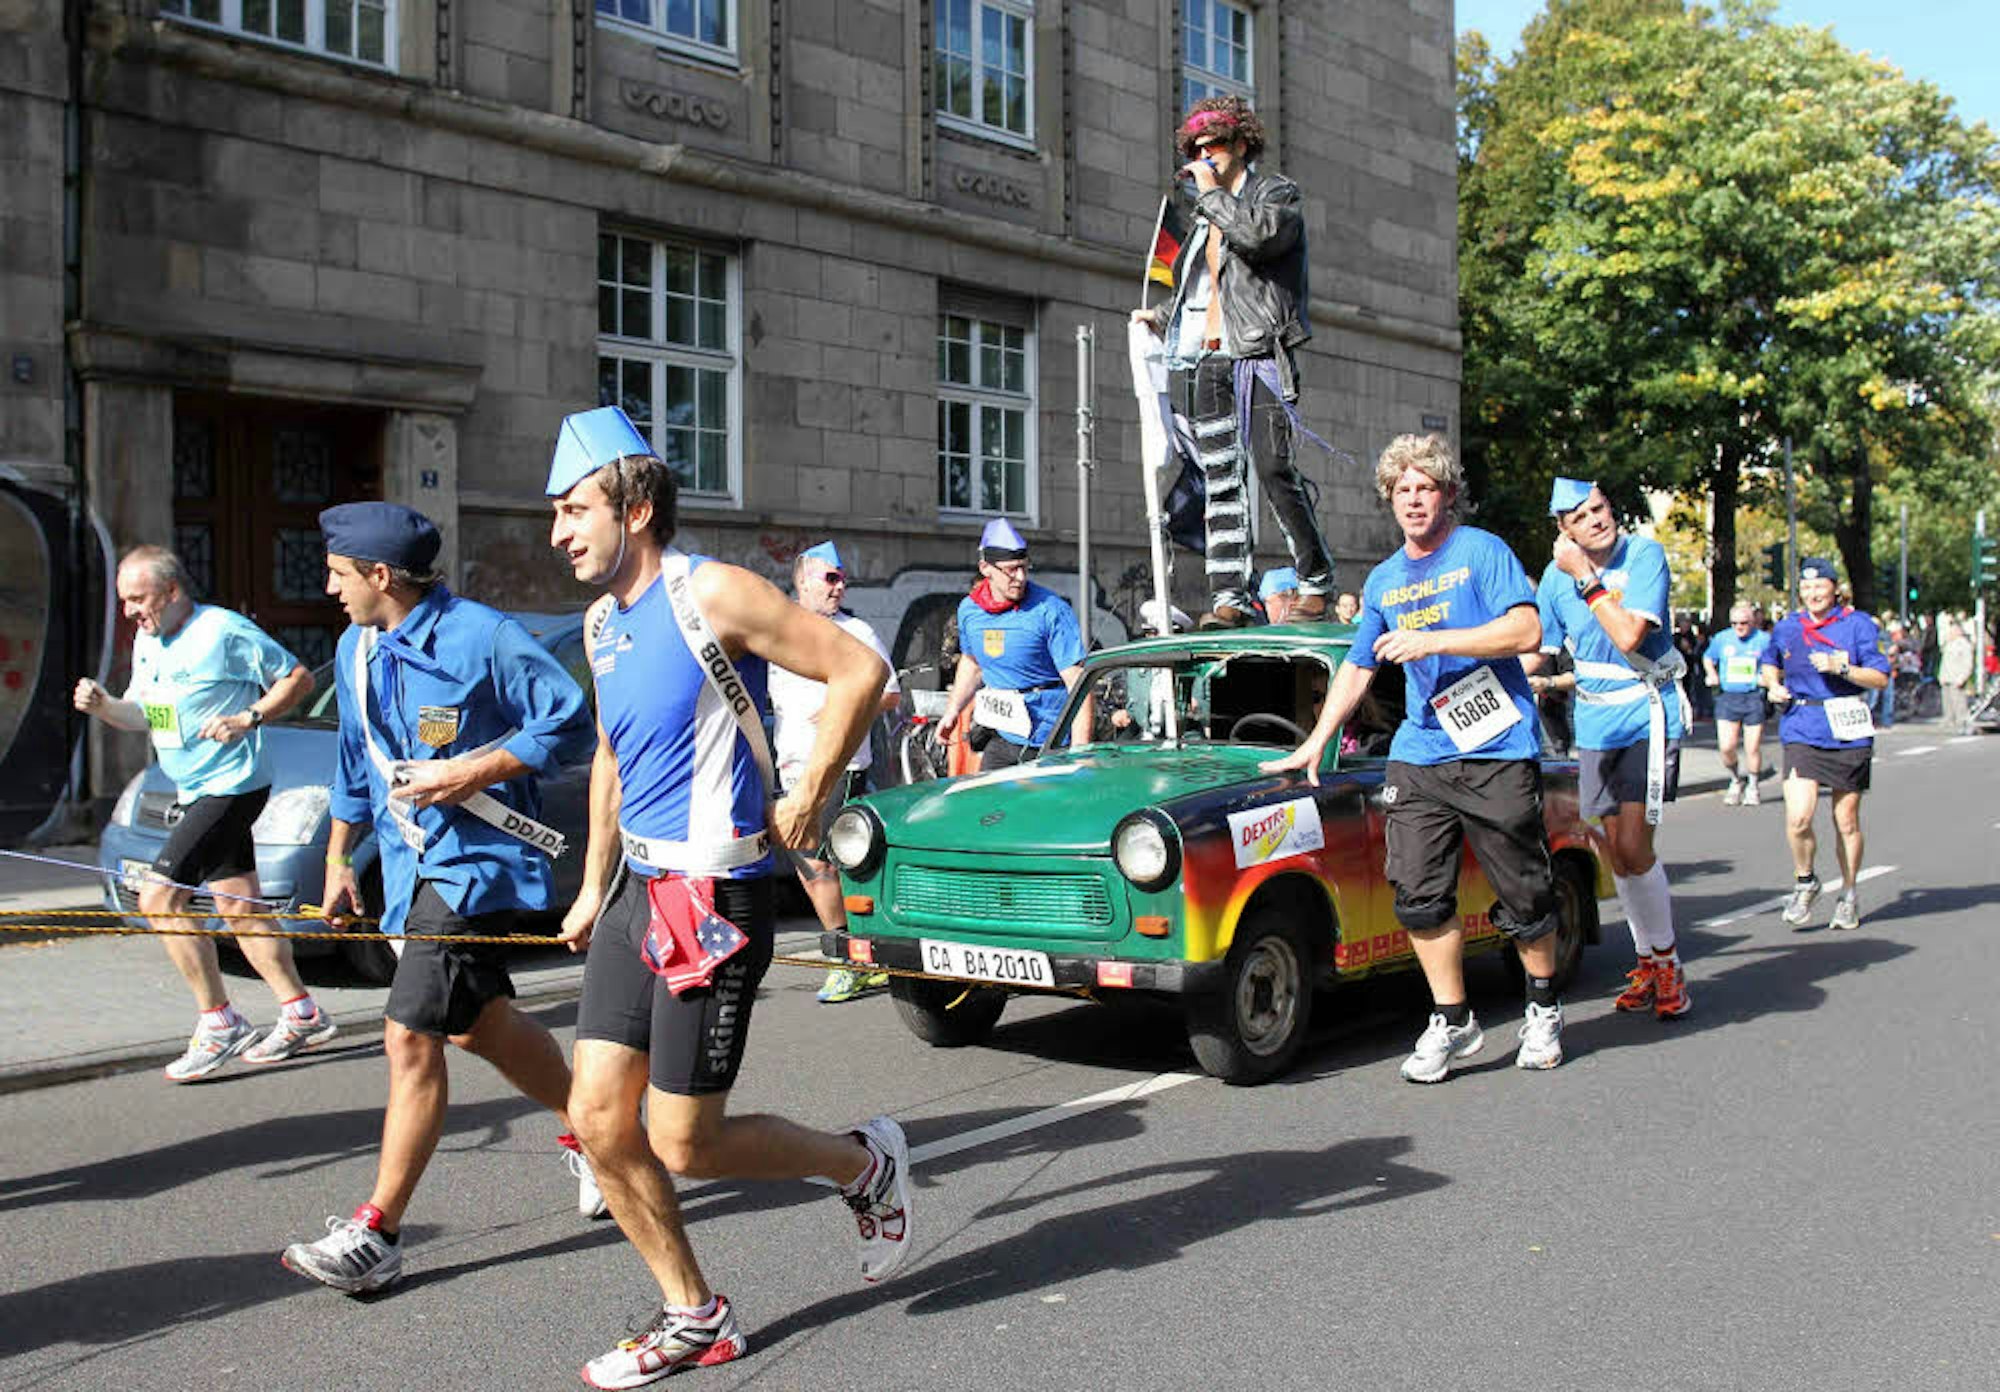 Zum Tag der deutschen Einheit am 3. Oktober 2010 ziehen 20 als FDJ-Pioniere verkleidete Läufer einen Trabbi über die Marathonstrecke.